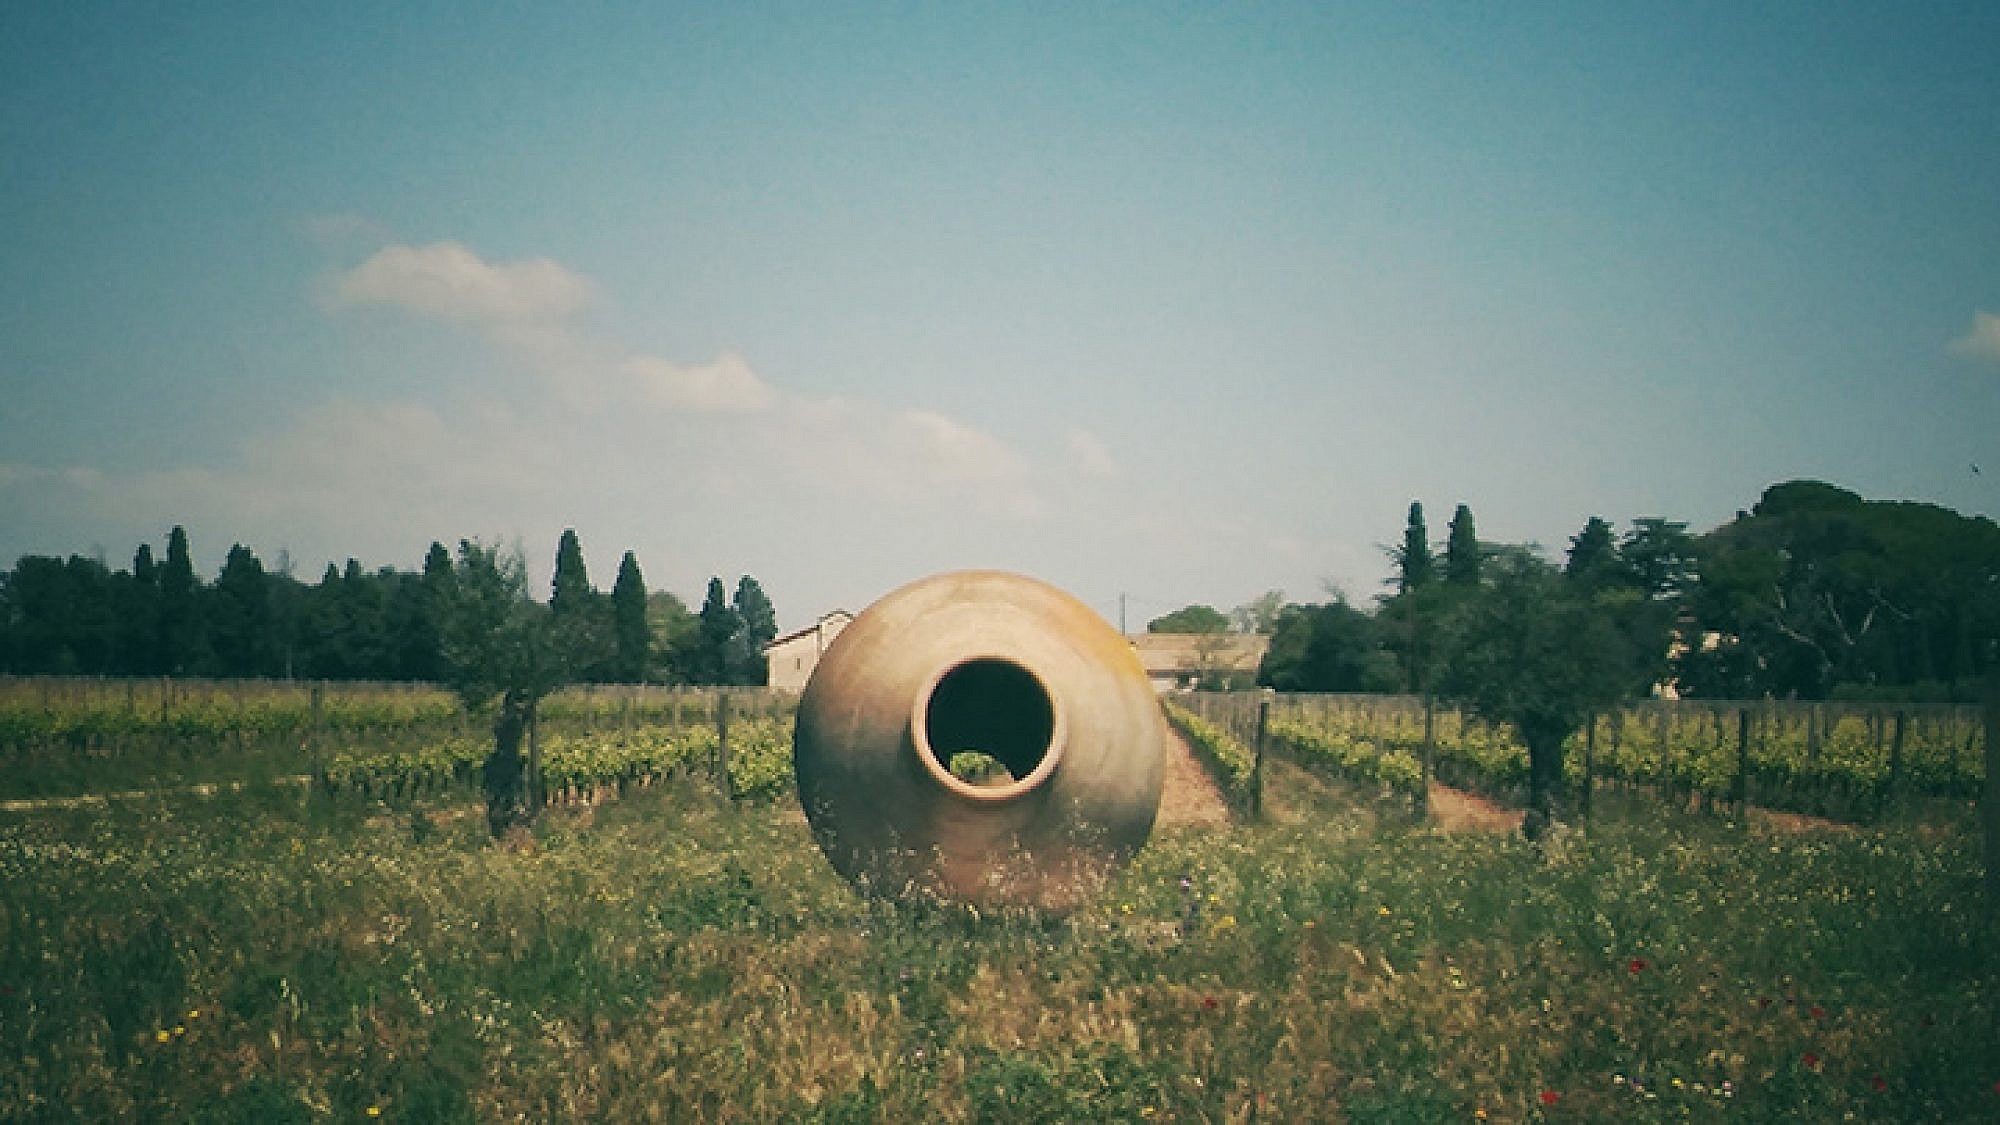 כד יין עתיק, חבל אוקסיטניה | צילום: אינגה מיכאלי